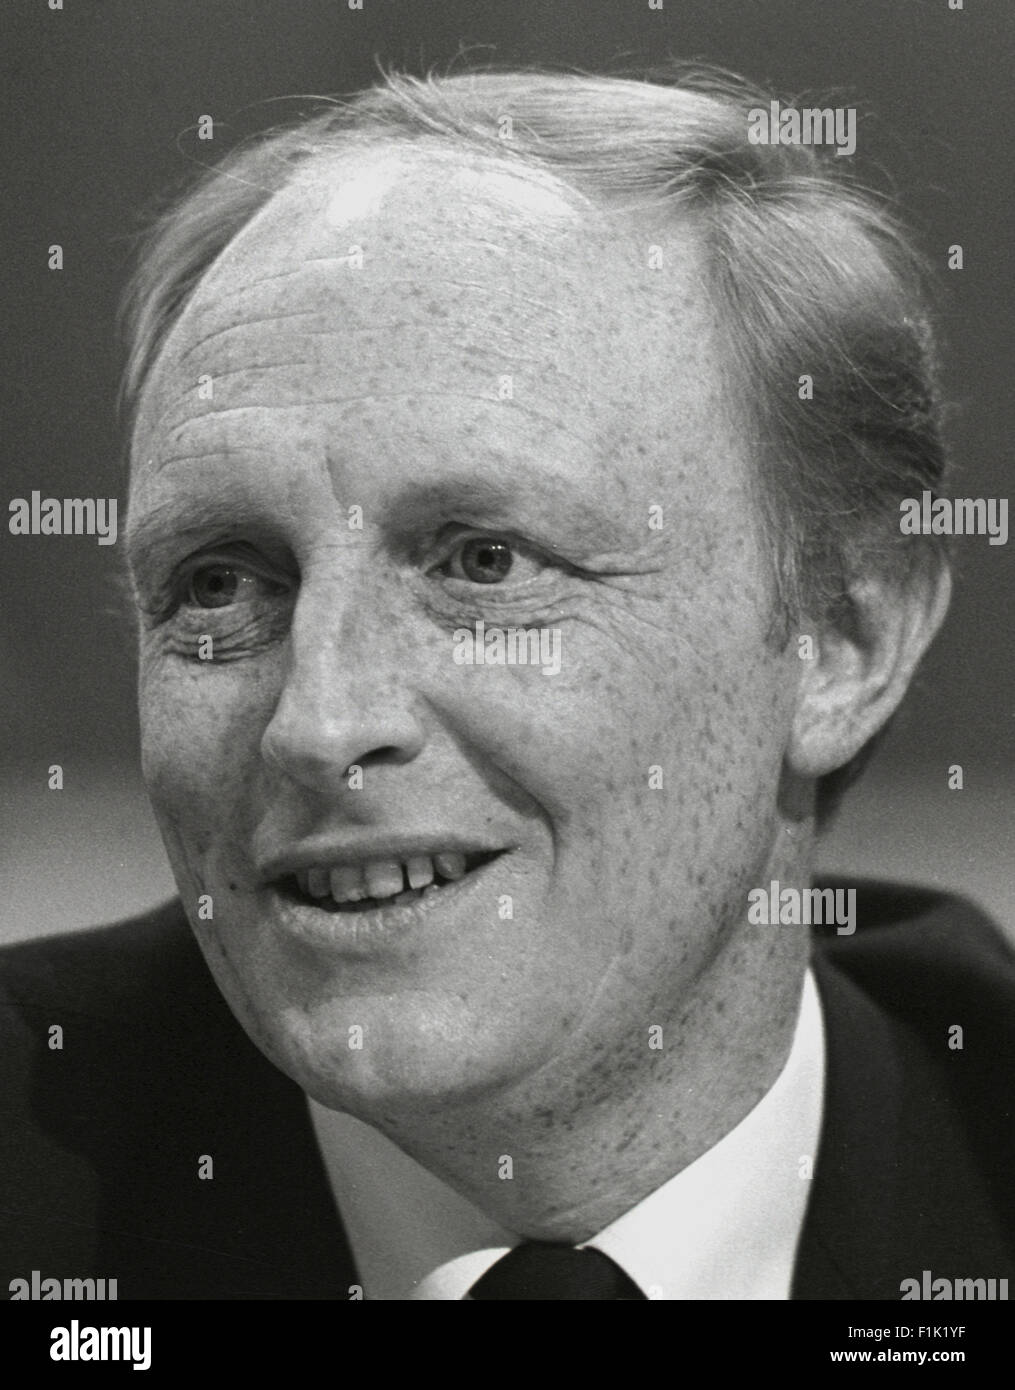 Neil Kinnock Signore Kinnock politico del lavoro 1984 Immagine di David Cole dalla stampa Ritratto archivi di servizio Foto Stock